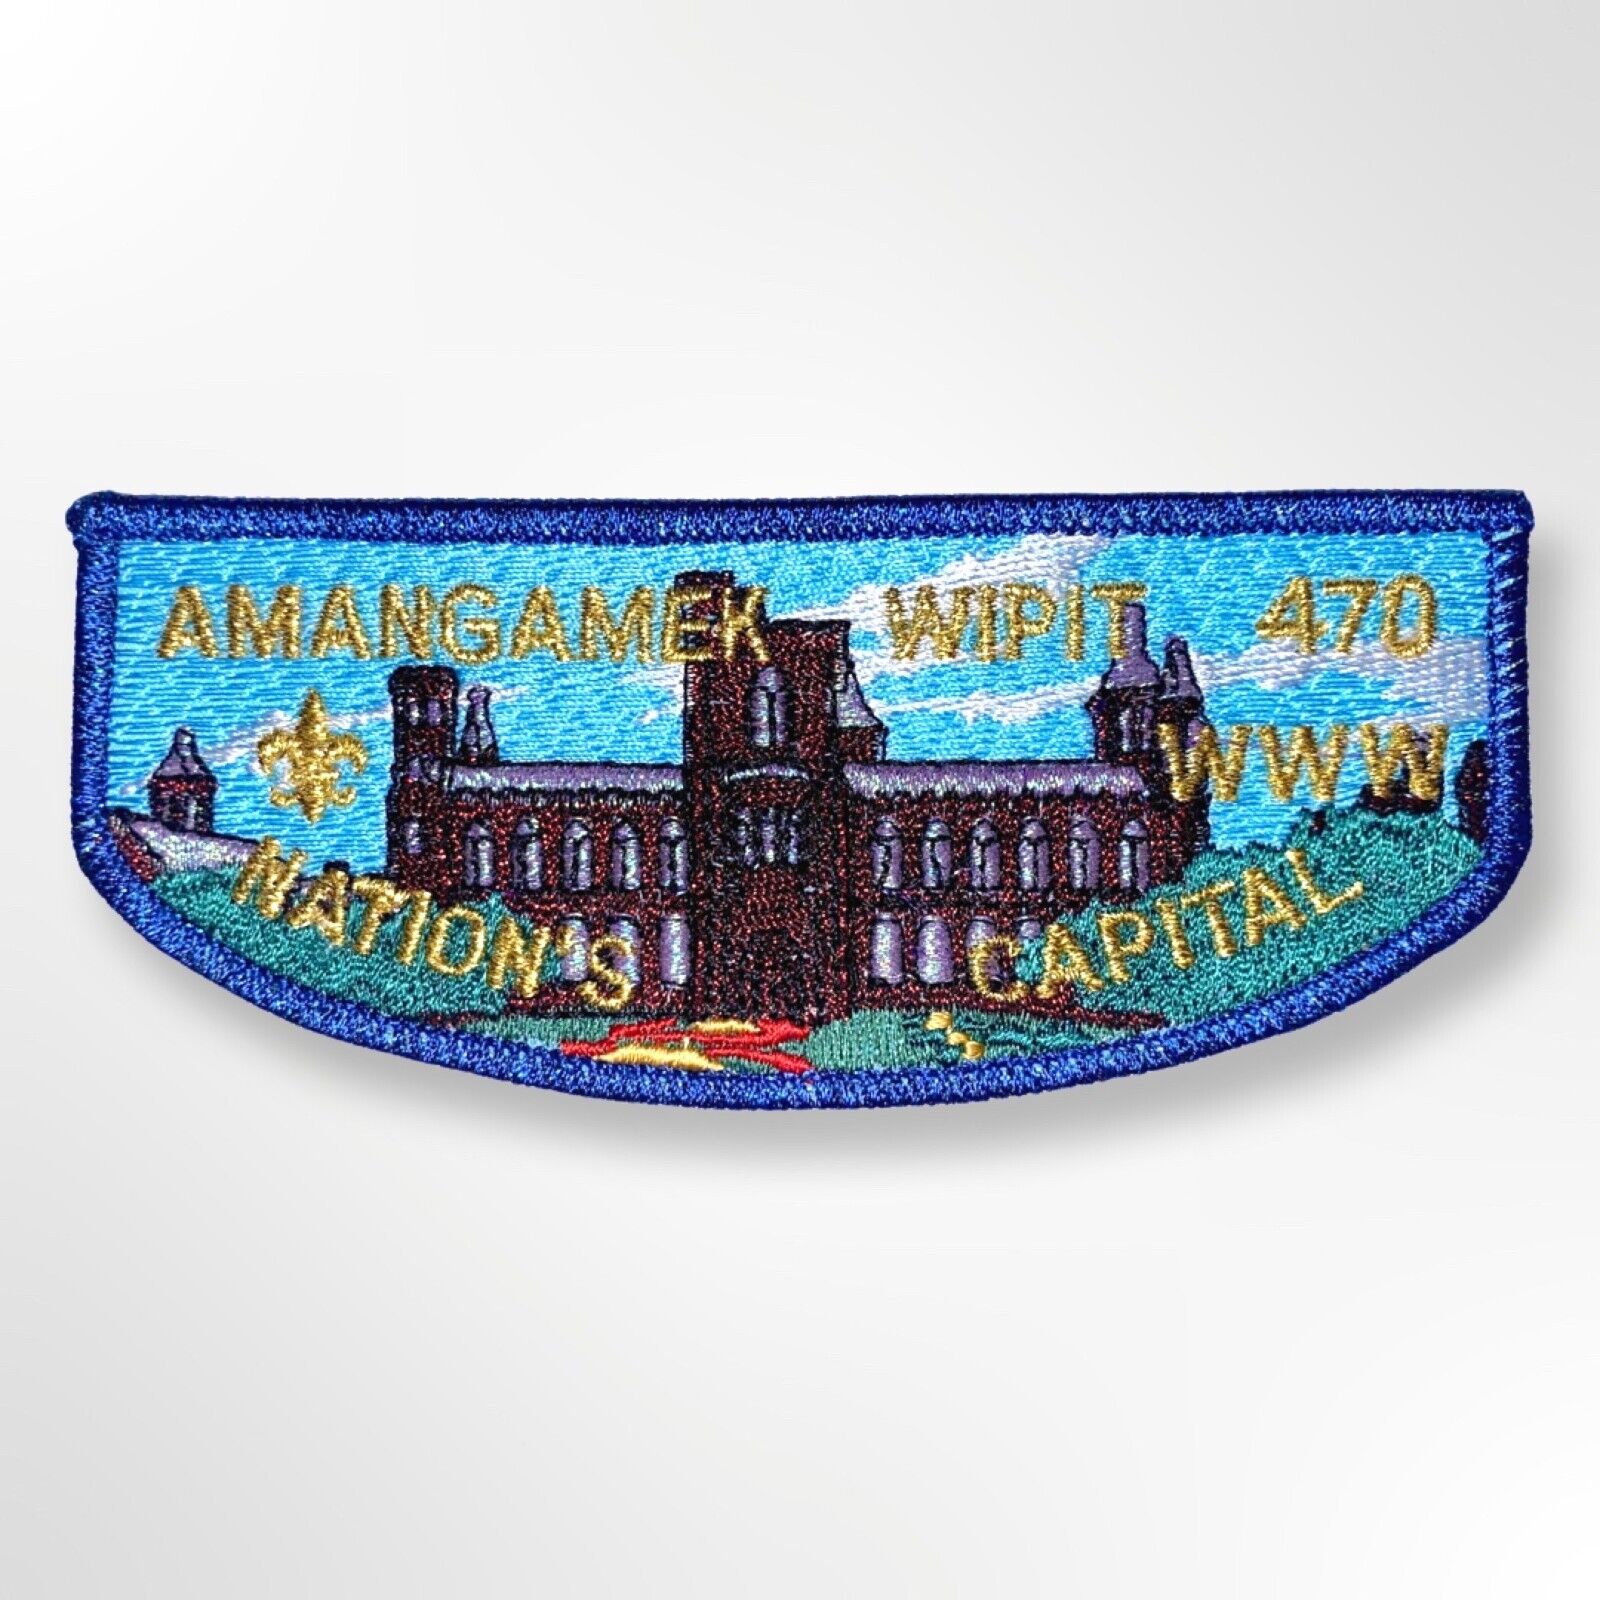 Smithsonian- Amangamek Wipit, Lodge 470 -OA Flap